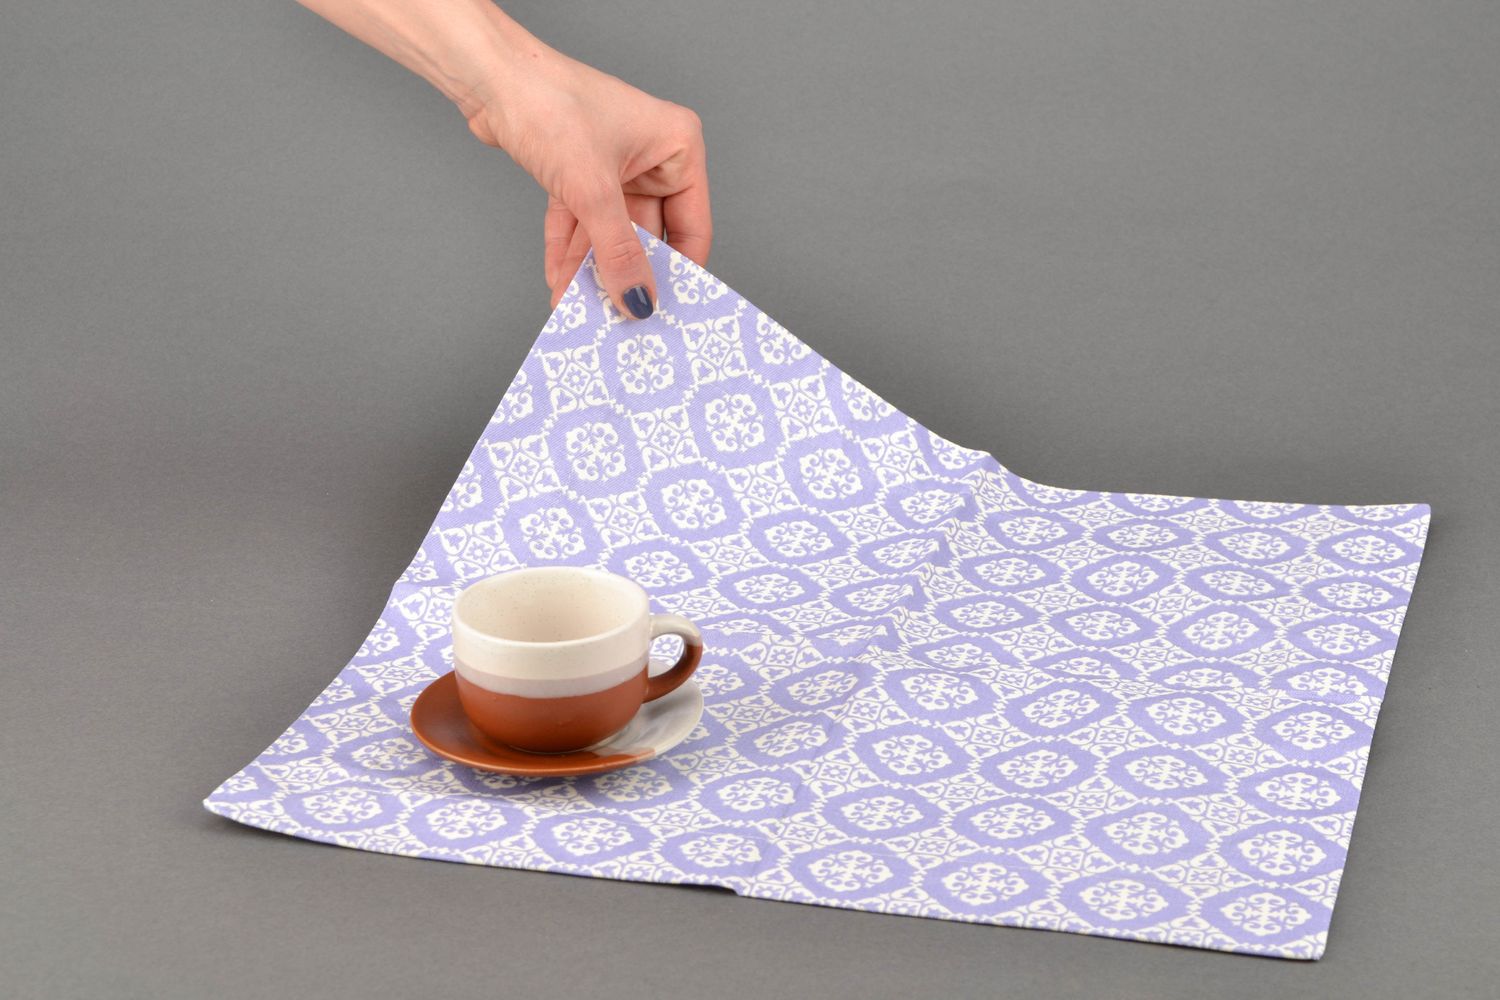 Текстильная салфетка для сервировки стола ручной работы Лаванда-ажур фото 2